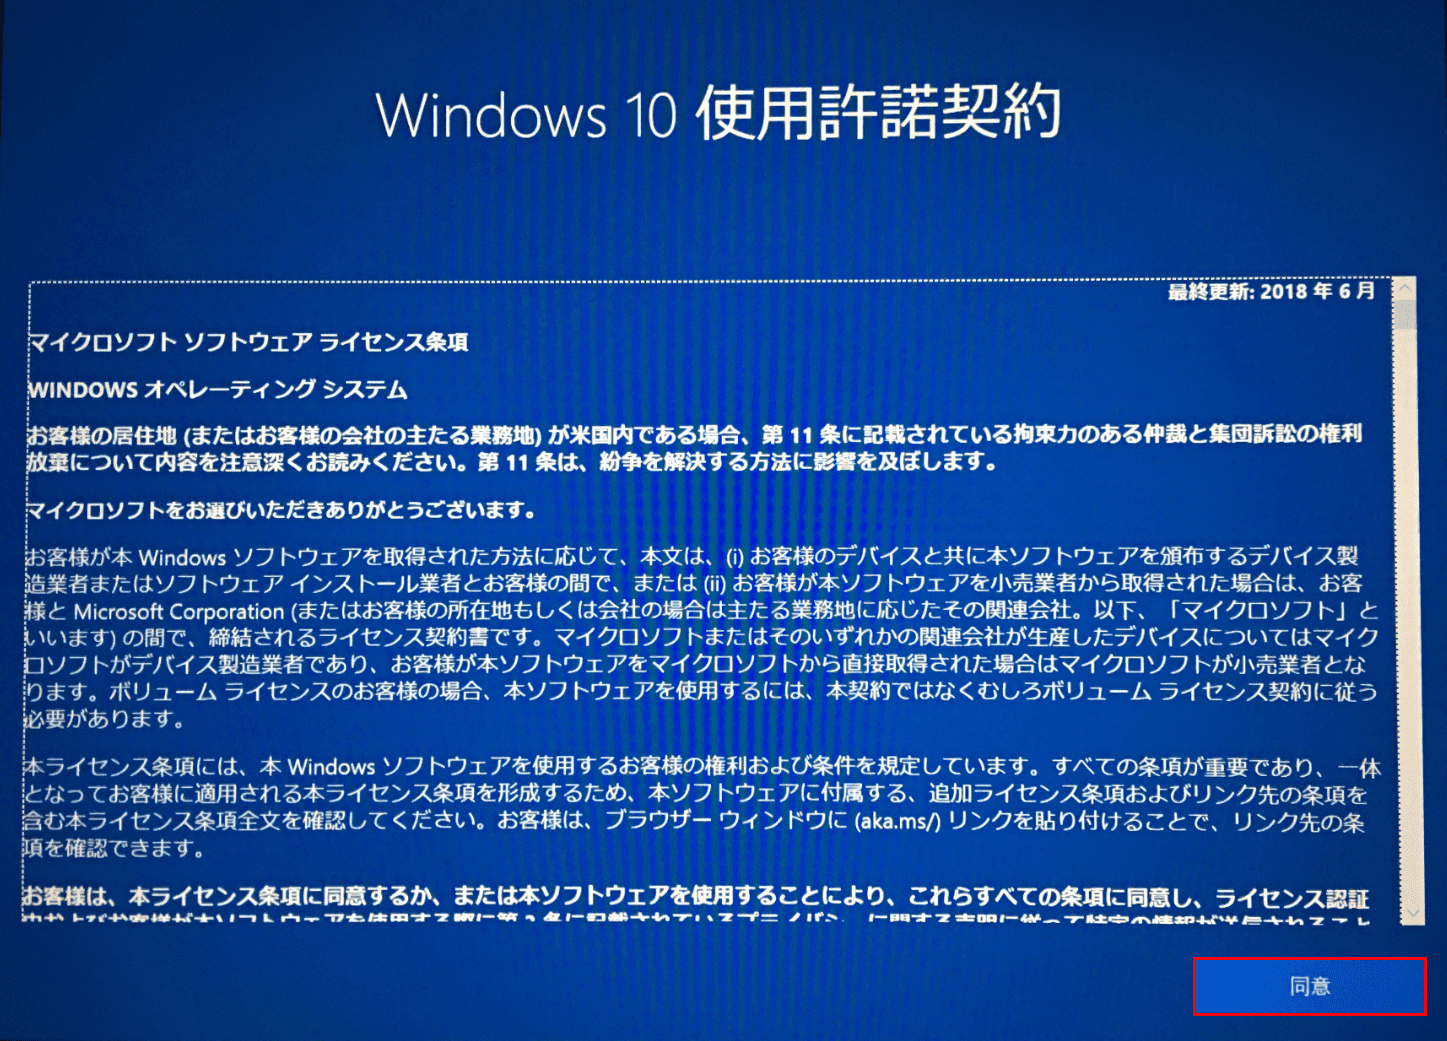 Windows10初期設定、使用許諾契約